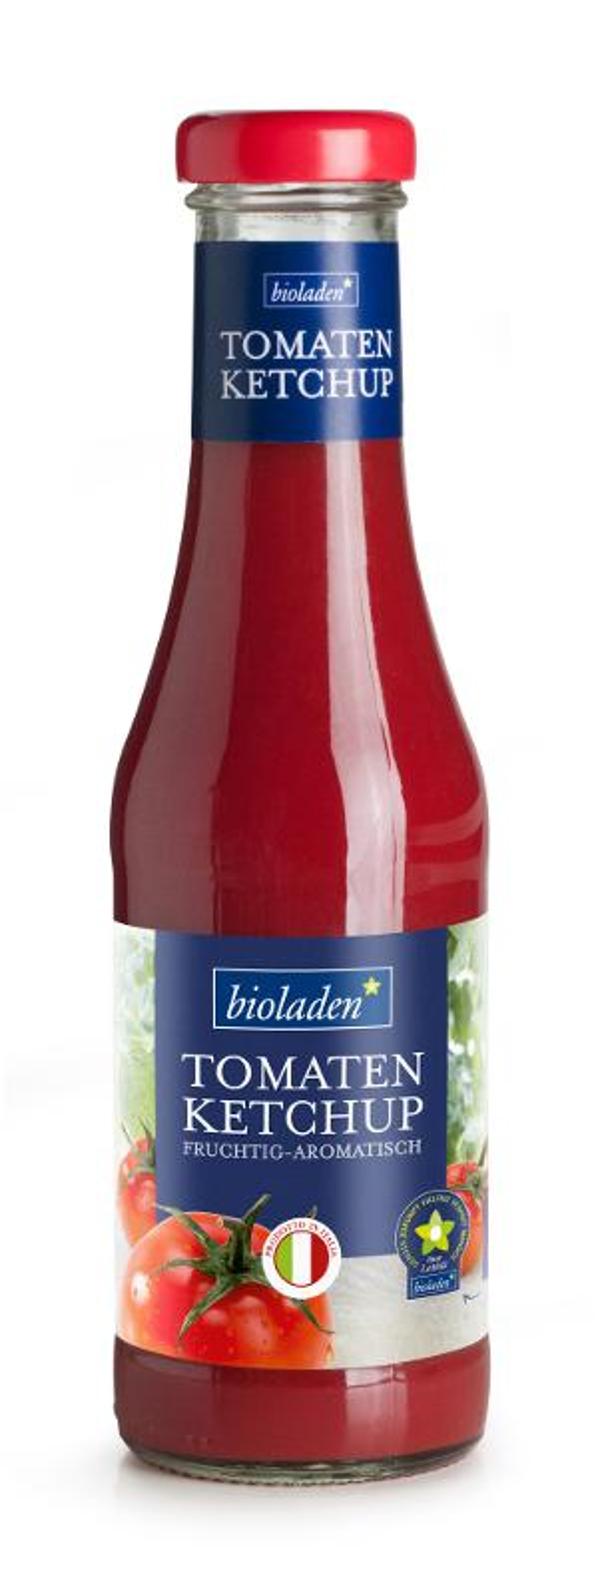 Produktfoto zu Bioladen* Tomatenketchup 450ml